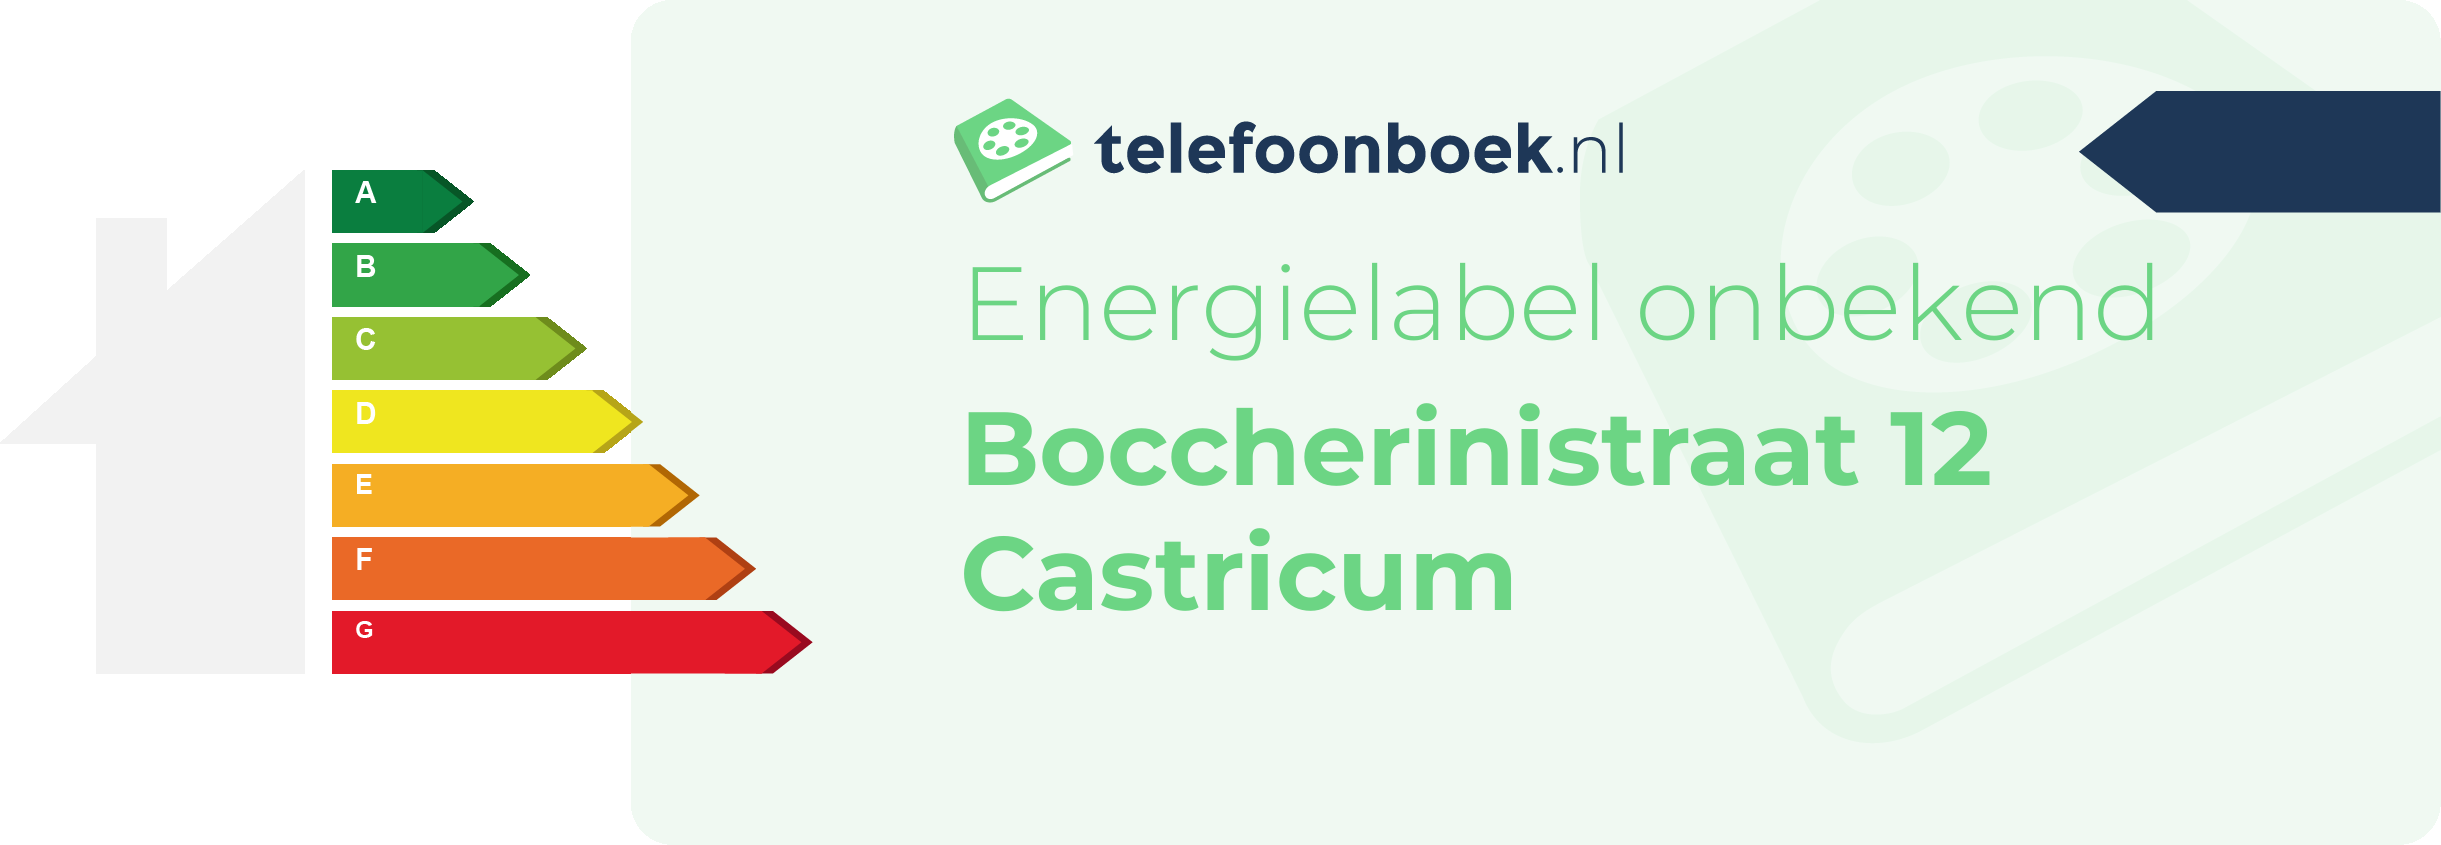 Energielabel Boccherinistraat 12 Castricum